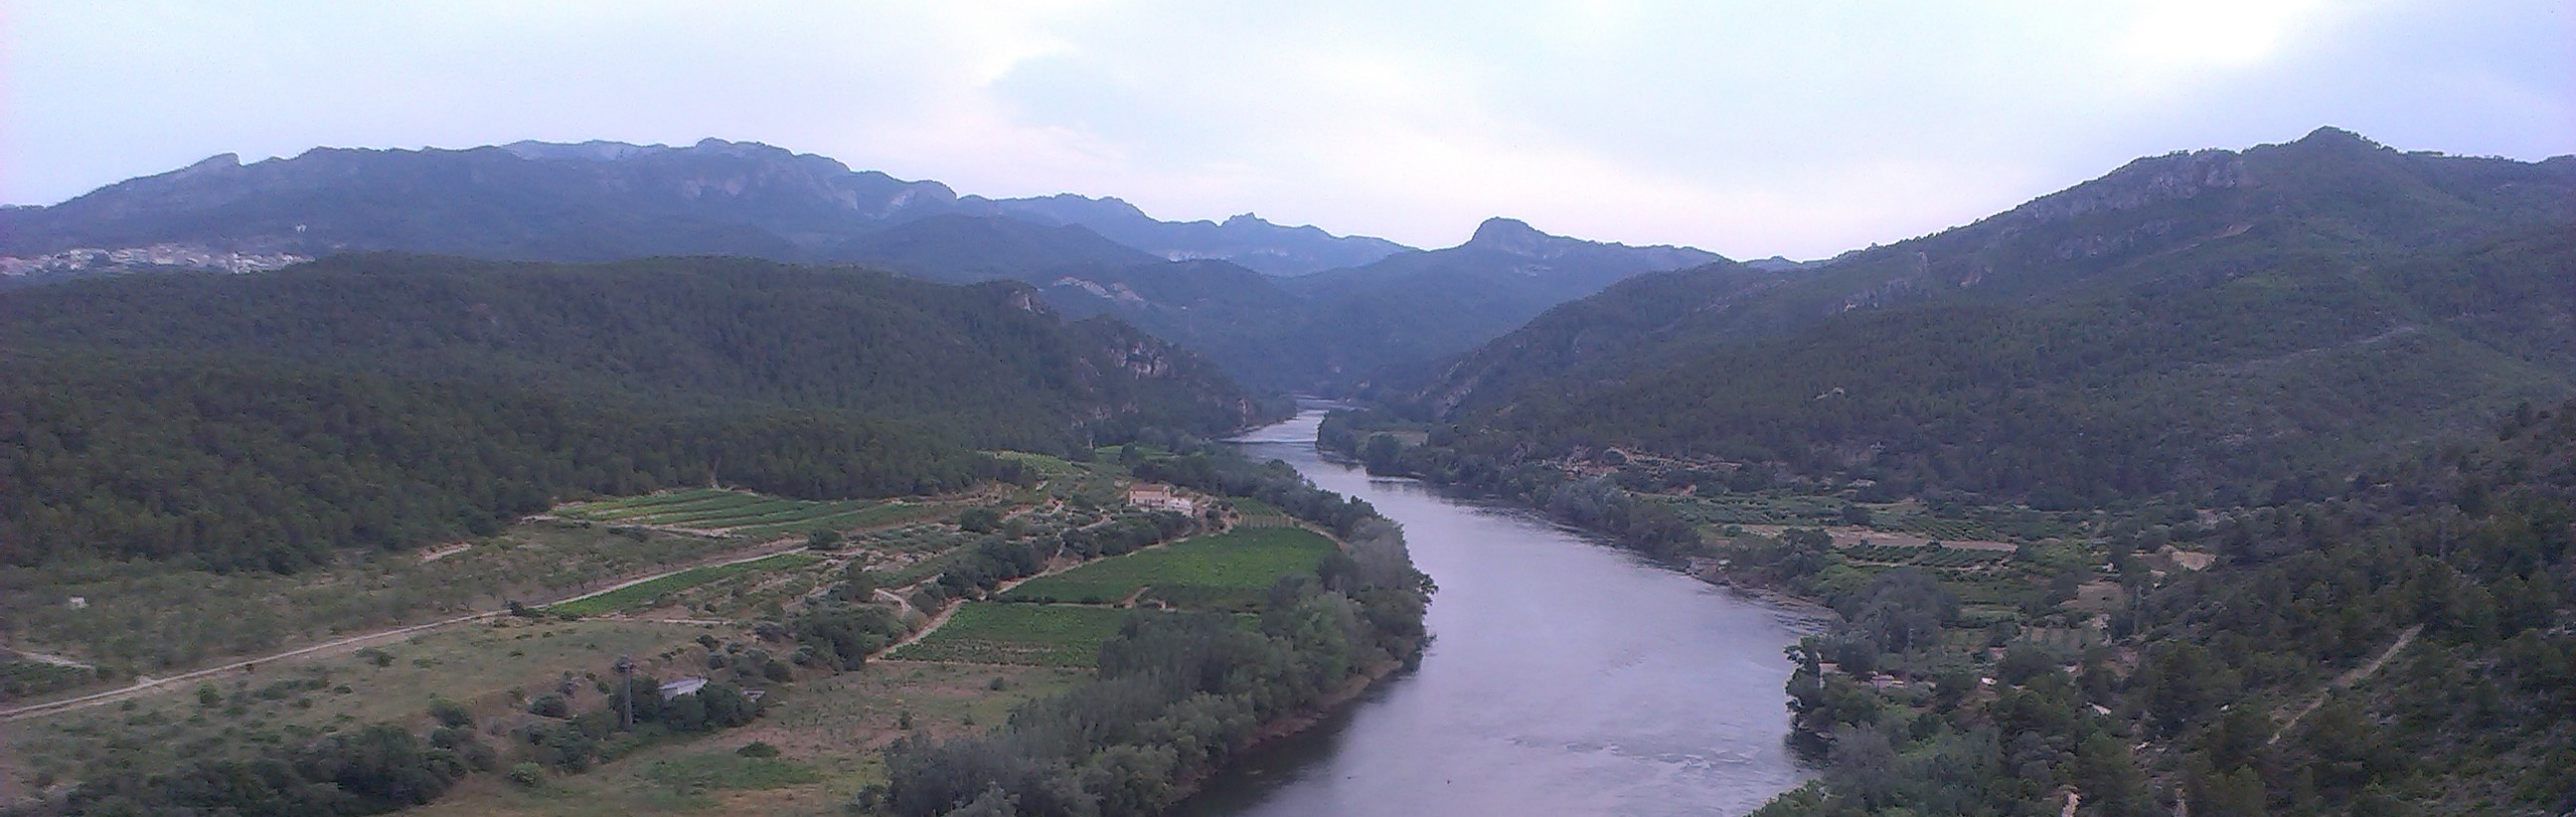 La CHE, Delegación del Gobierno en La Rioja y el Gobierno de La Rioja se reúnen para hablar sobre las actuaciones inmediatas en la presa de Soto – Terroba